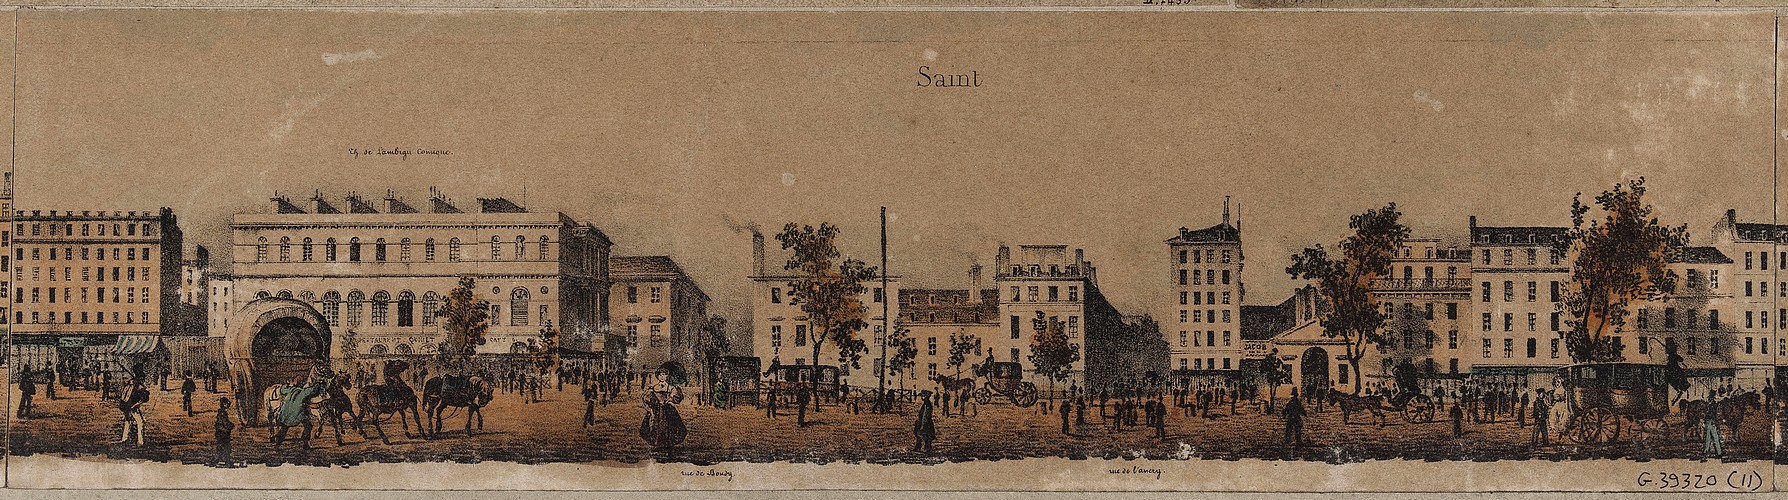 Les grands boulevard en frise : boulevard Saint-Martin  Chaperon - Philippe-Marie, Graveur - Entre 1847 et 1848 (Musée Carnavalet - Histoire de Paris)